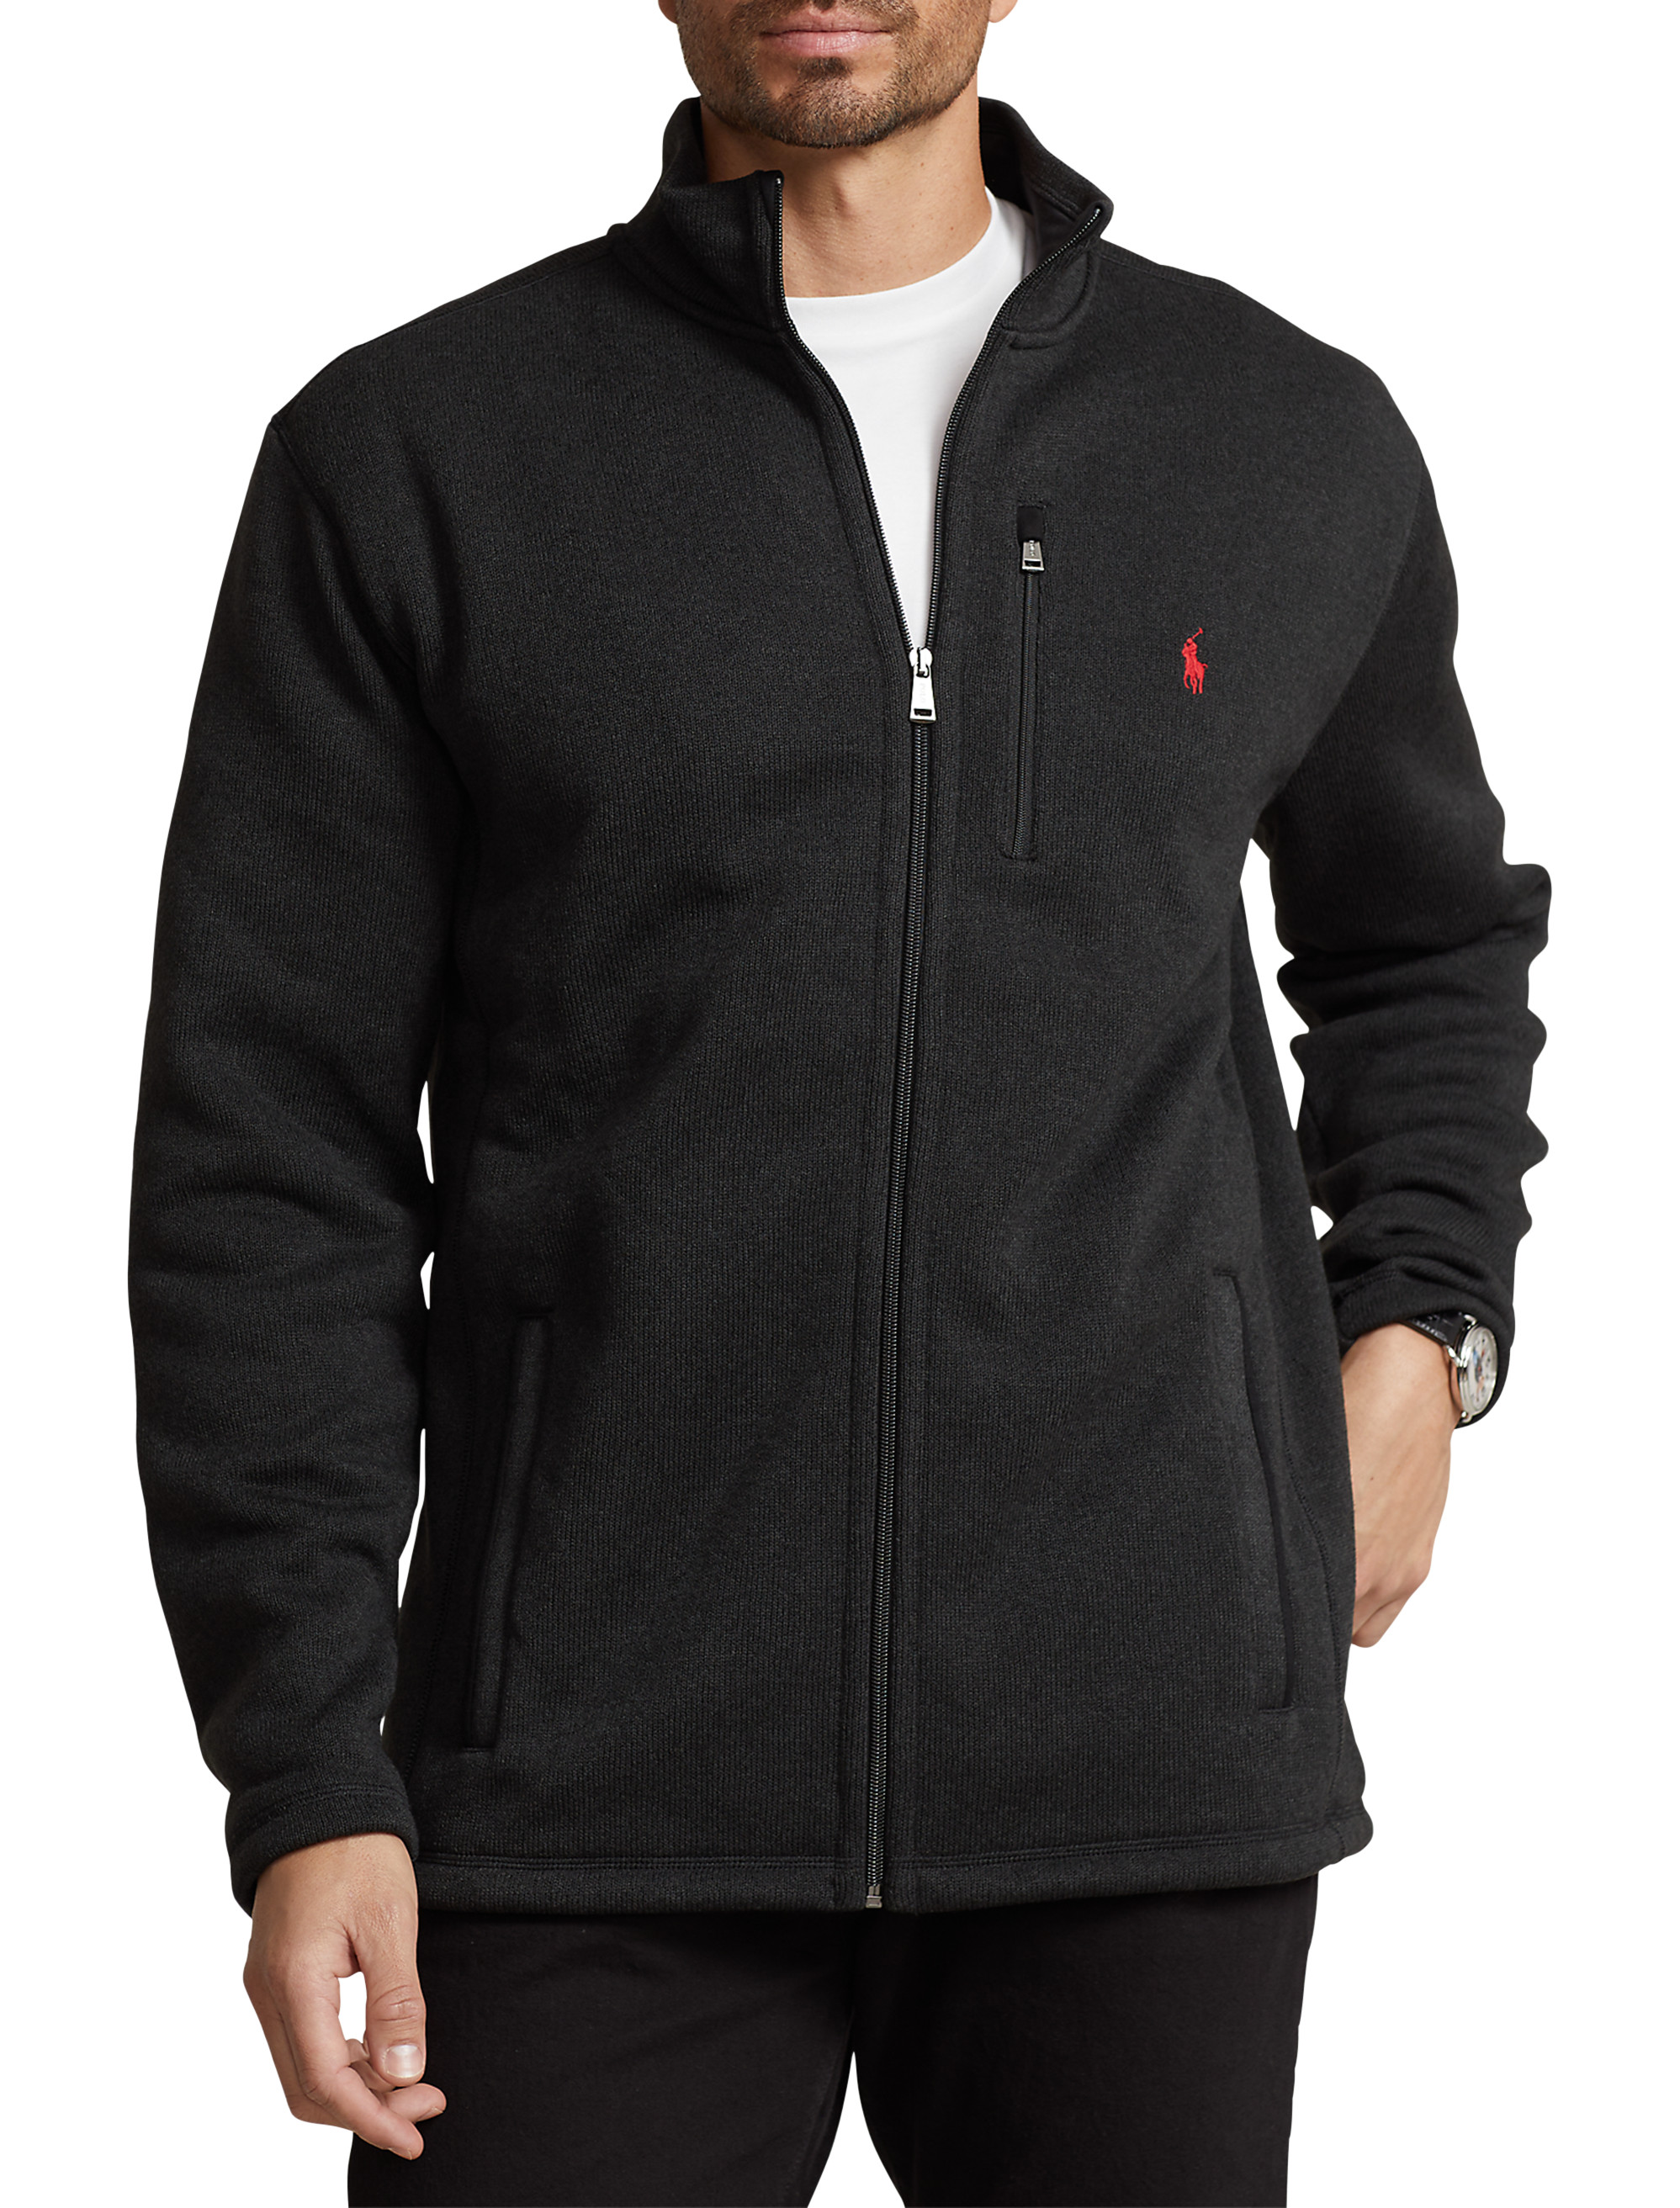 Big + Tall | Polo Ralph Lauren Sweater Fleece Jacket | DXL